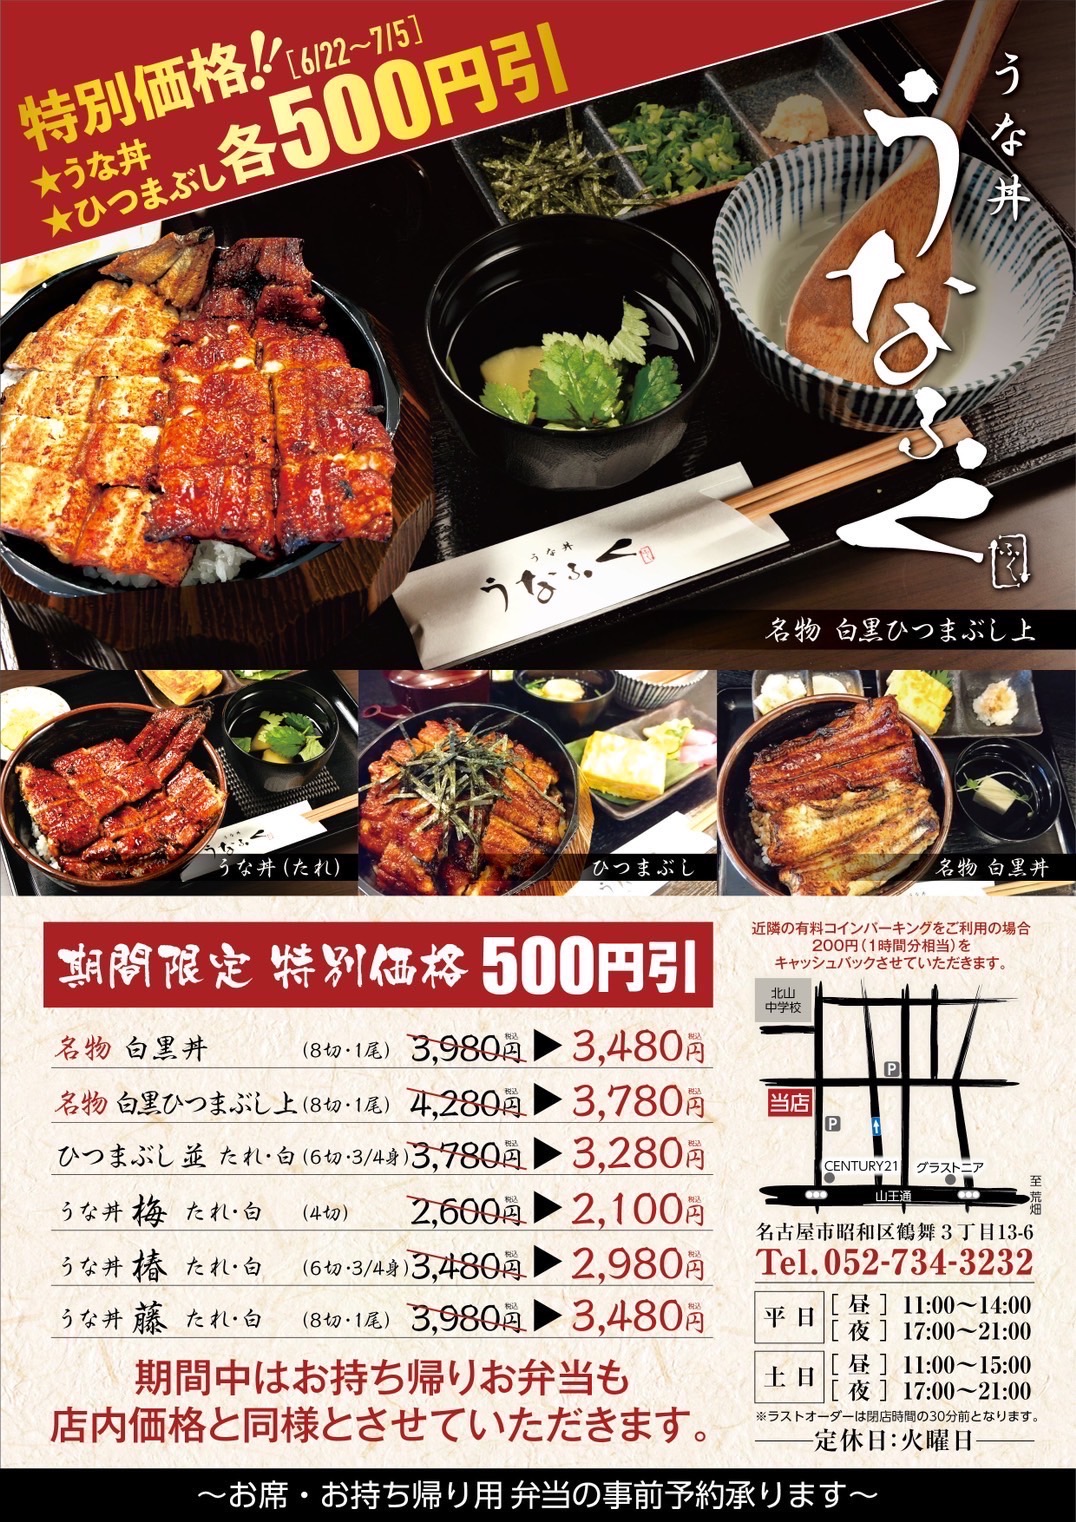 ■うな丼 うなふく・鶴舞店■うな丼とひつまぶし各 500円 引き‼（6/22㈯～7/5㈮まで）